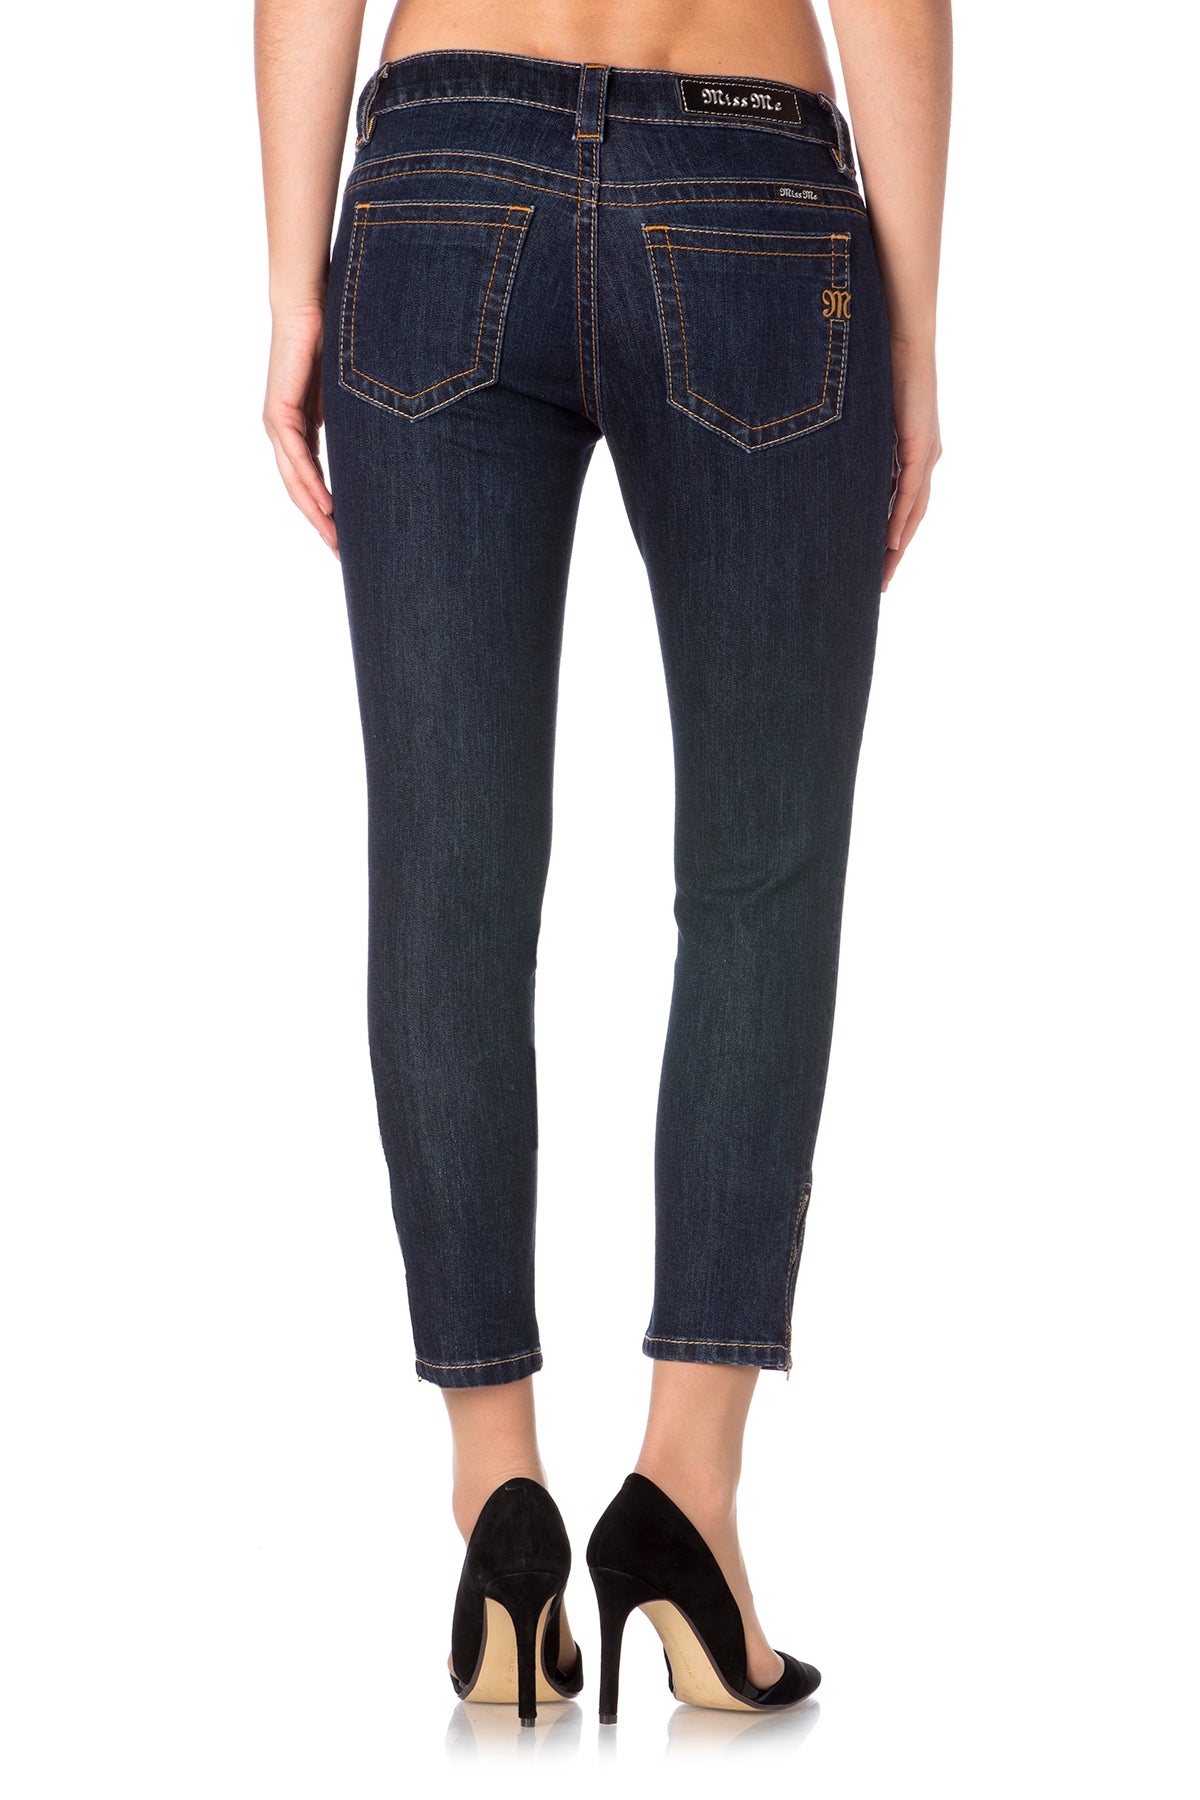 DK371 Midrise Jeans